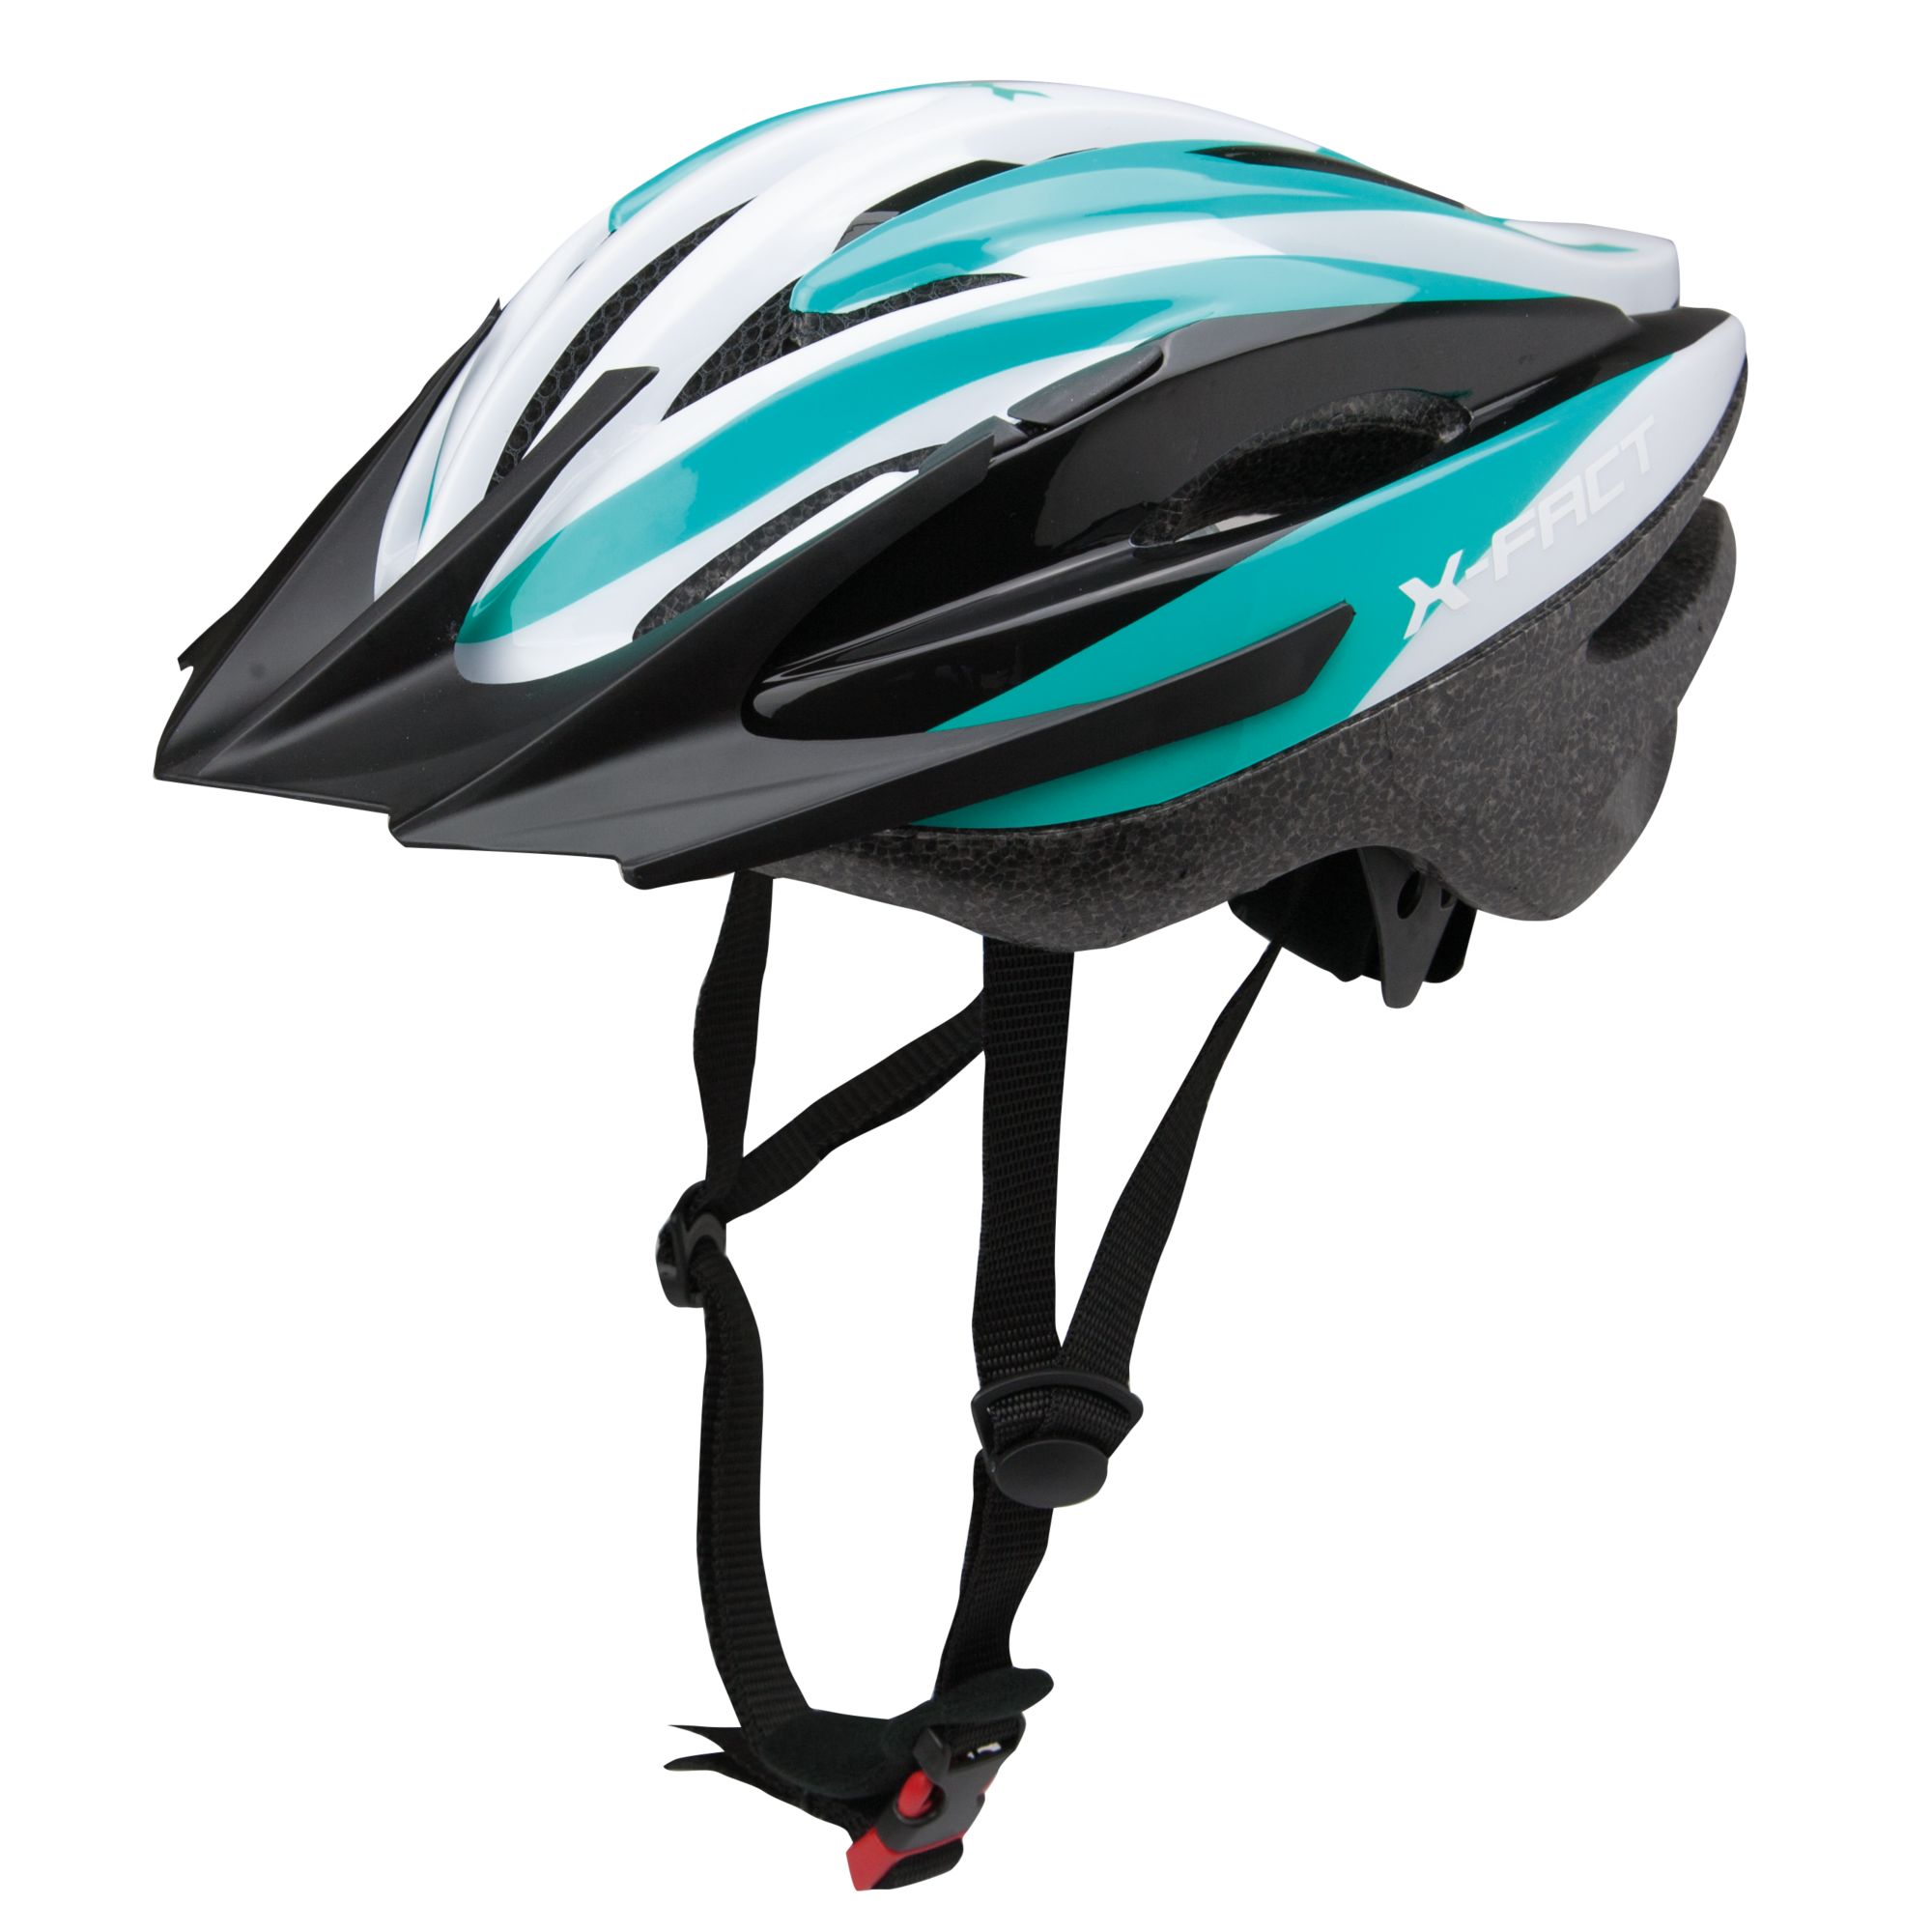 Helmet X10 Pret Mic Online decathlon imagine La Oferta Online